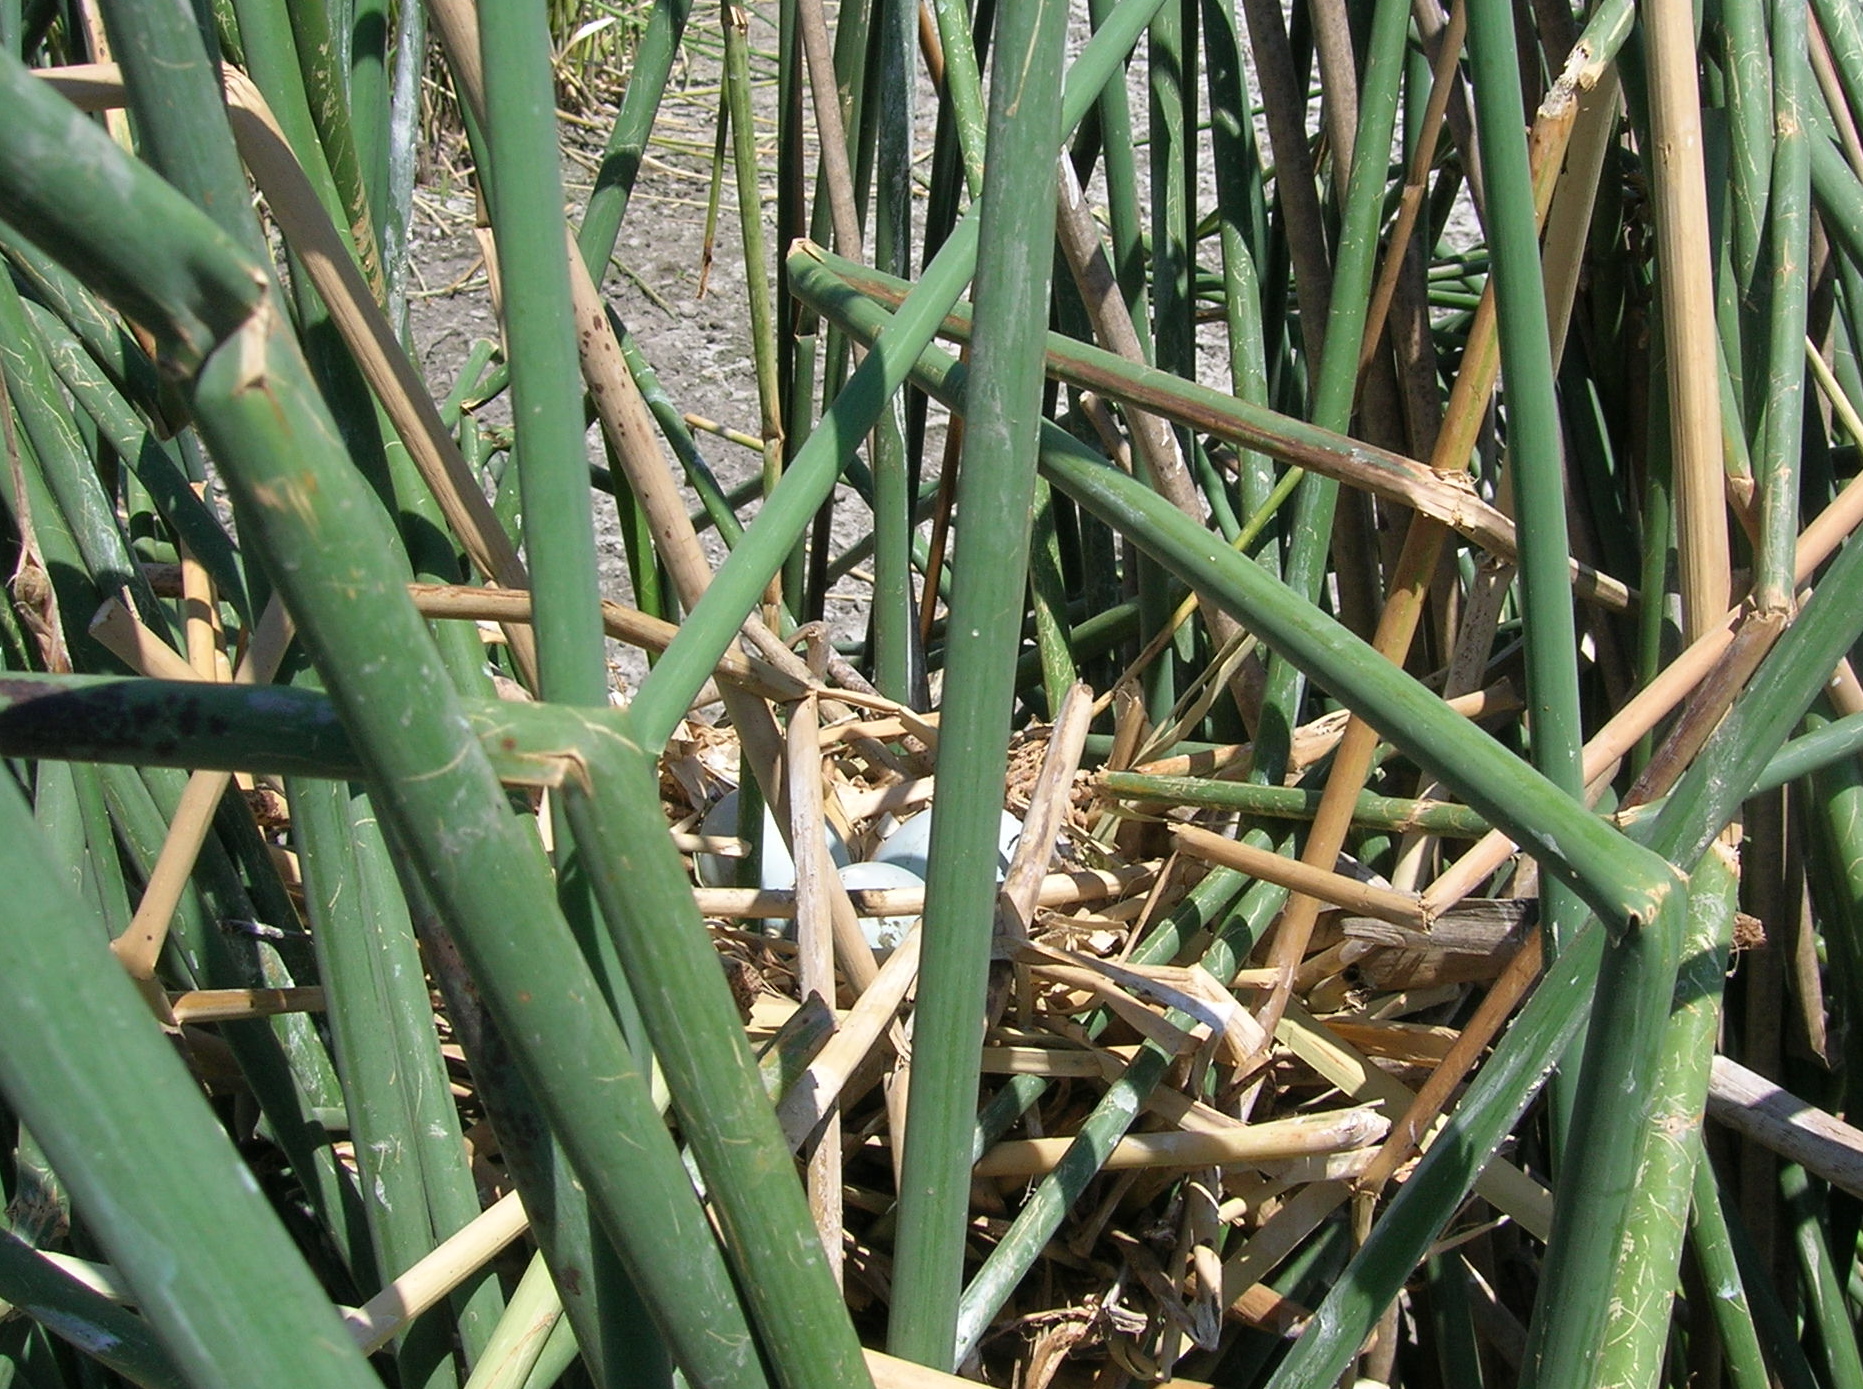 white-faced ibis nest with eggs nestled in green vegetation